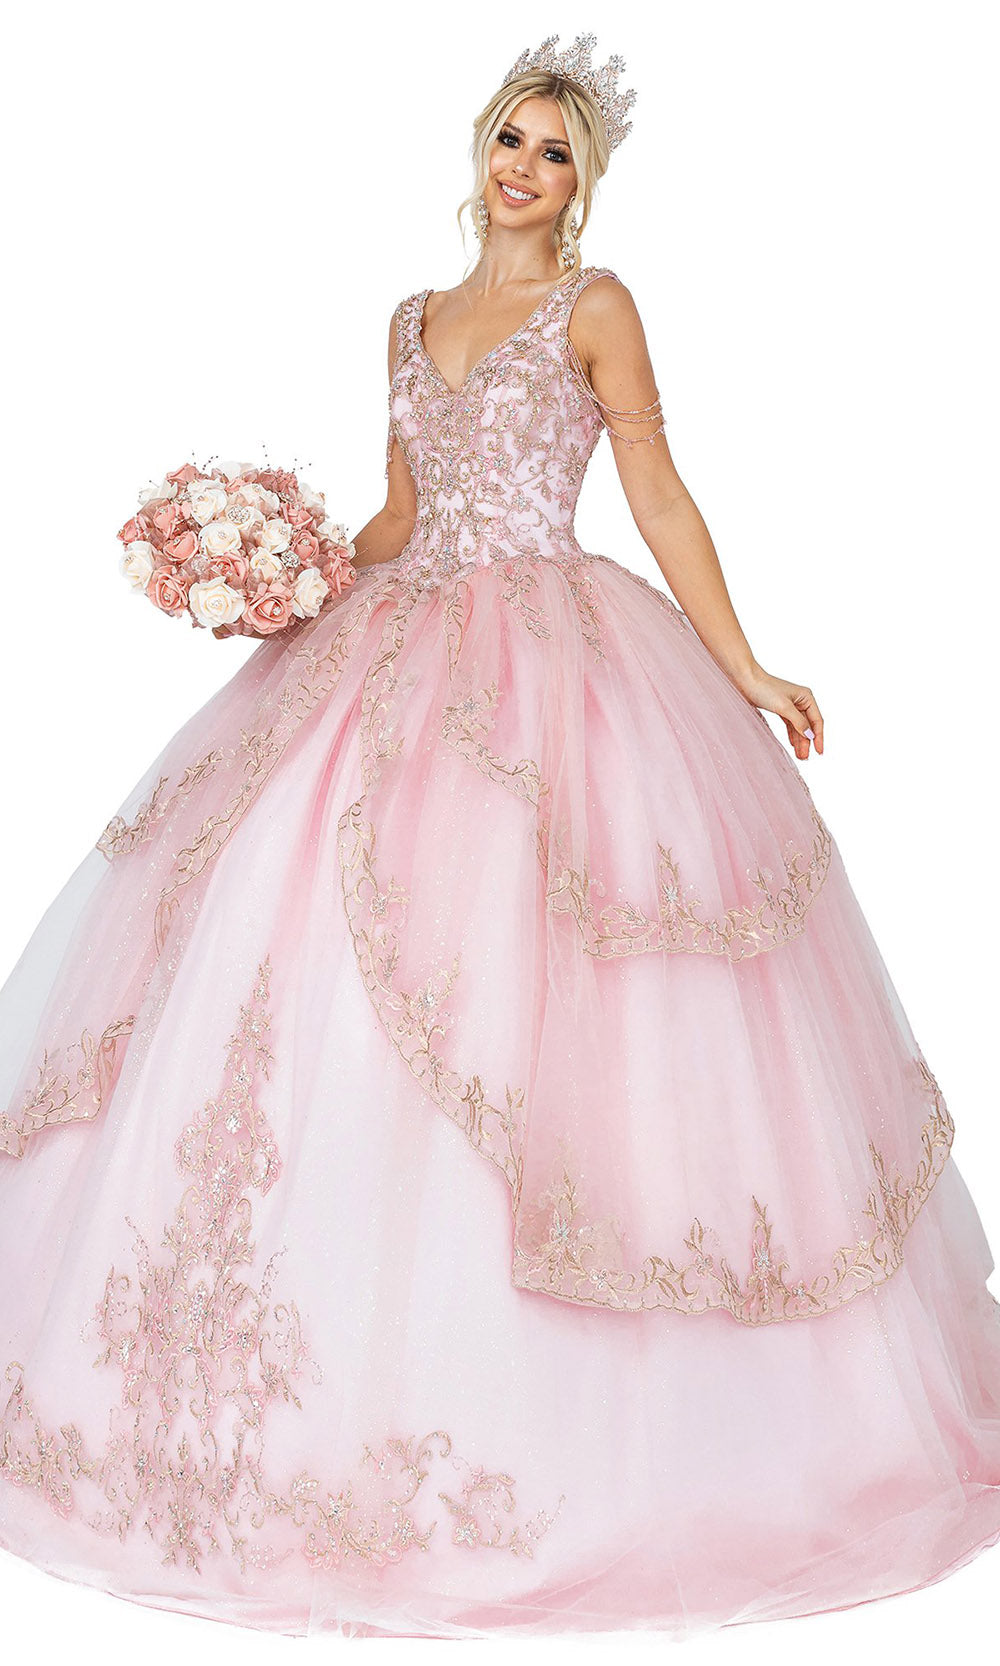 Dancing Queen - 1573 Bead-Garland Glitter Gown In Pink